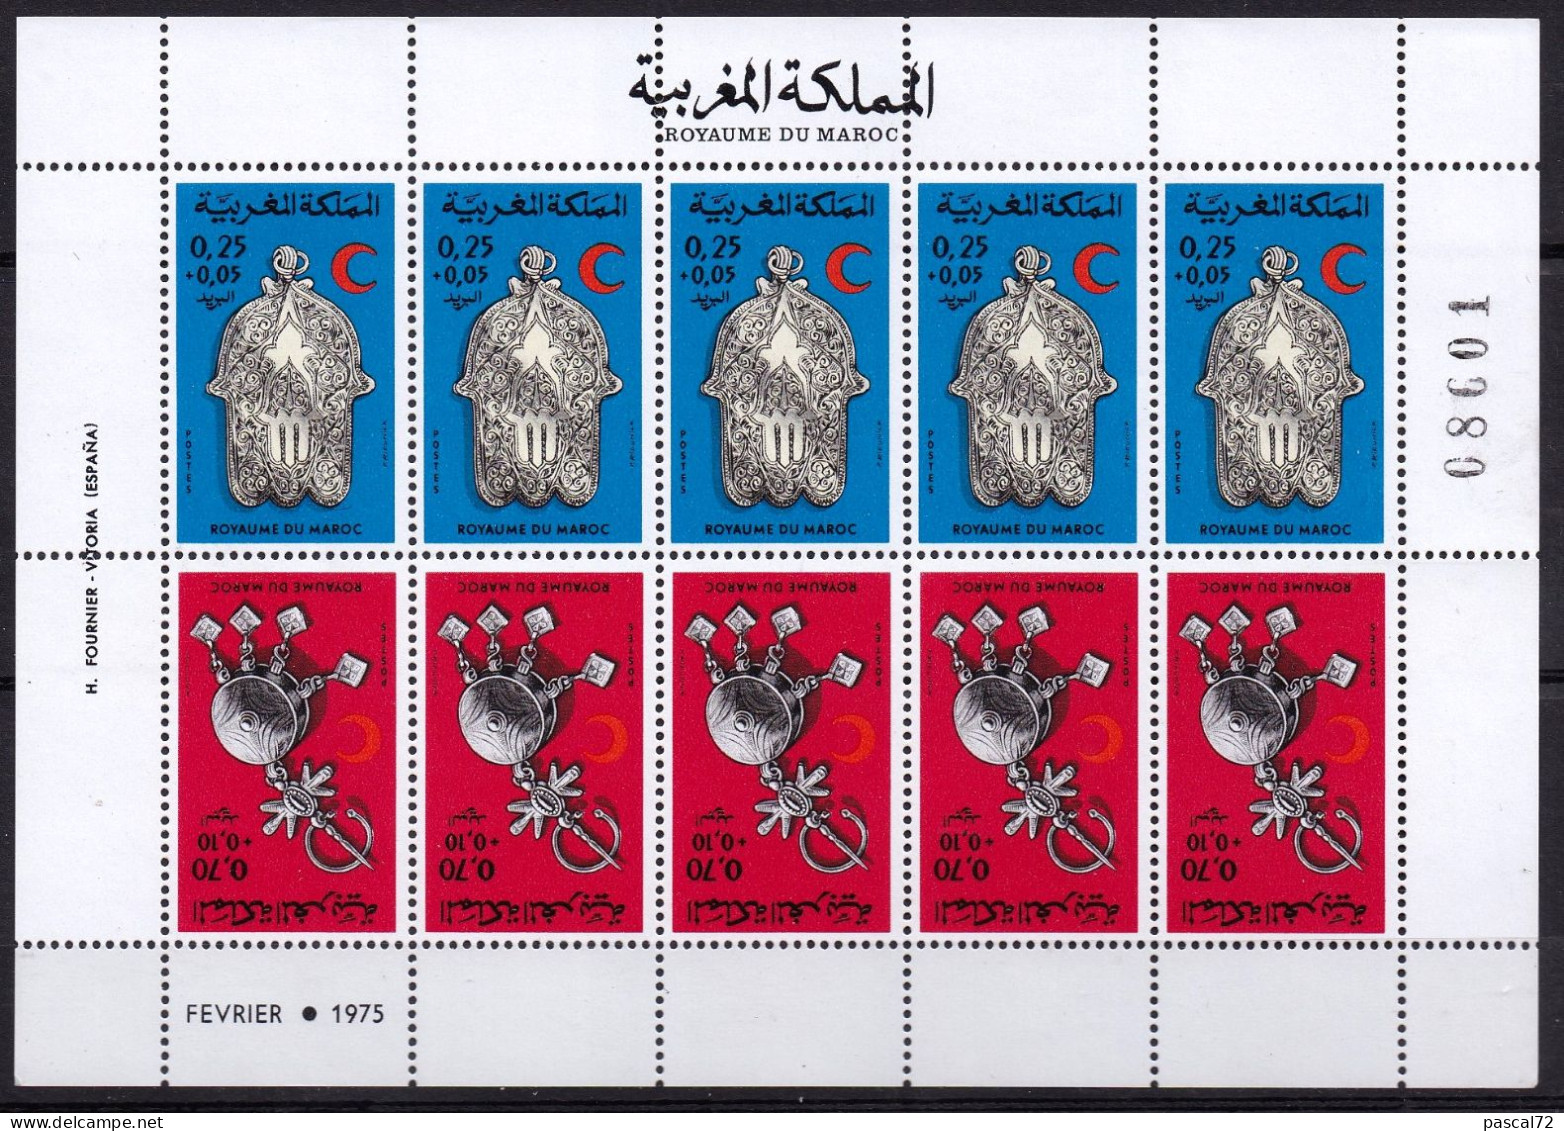 MAROC 1975 FEUILLE DE 5 PAIRES TÊTE-BÊCHE Y&T N° 724A N** - Morocco (1956-...)